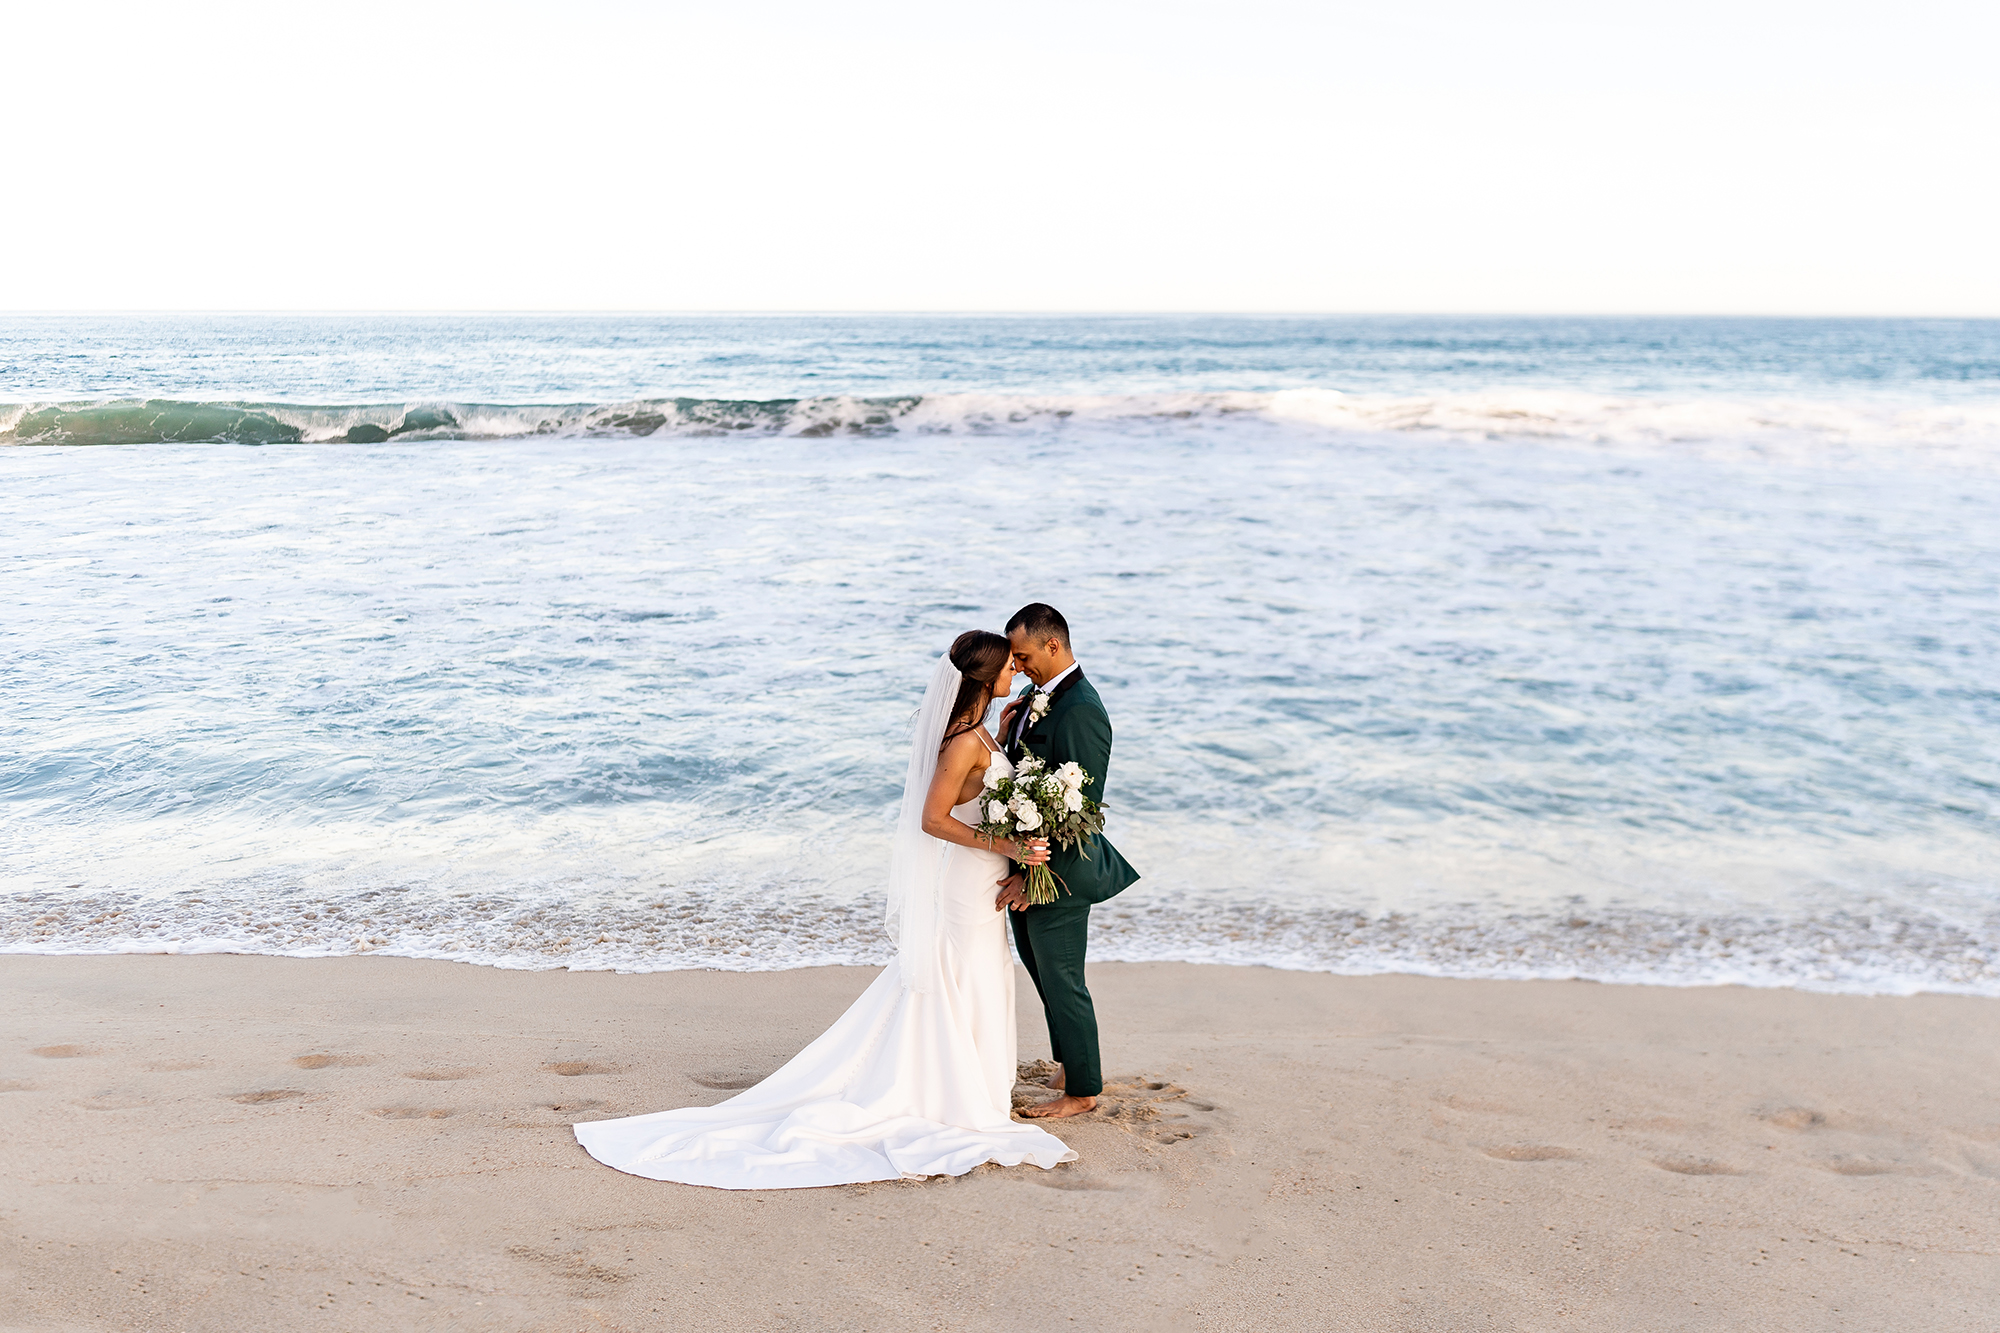 hyatt ziva los cabos wedding bride and groom on beach in mexico